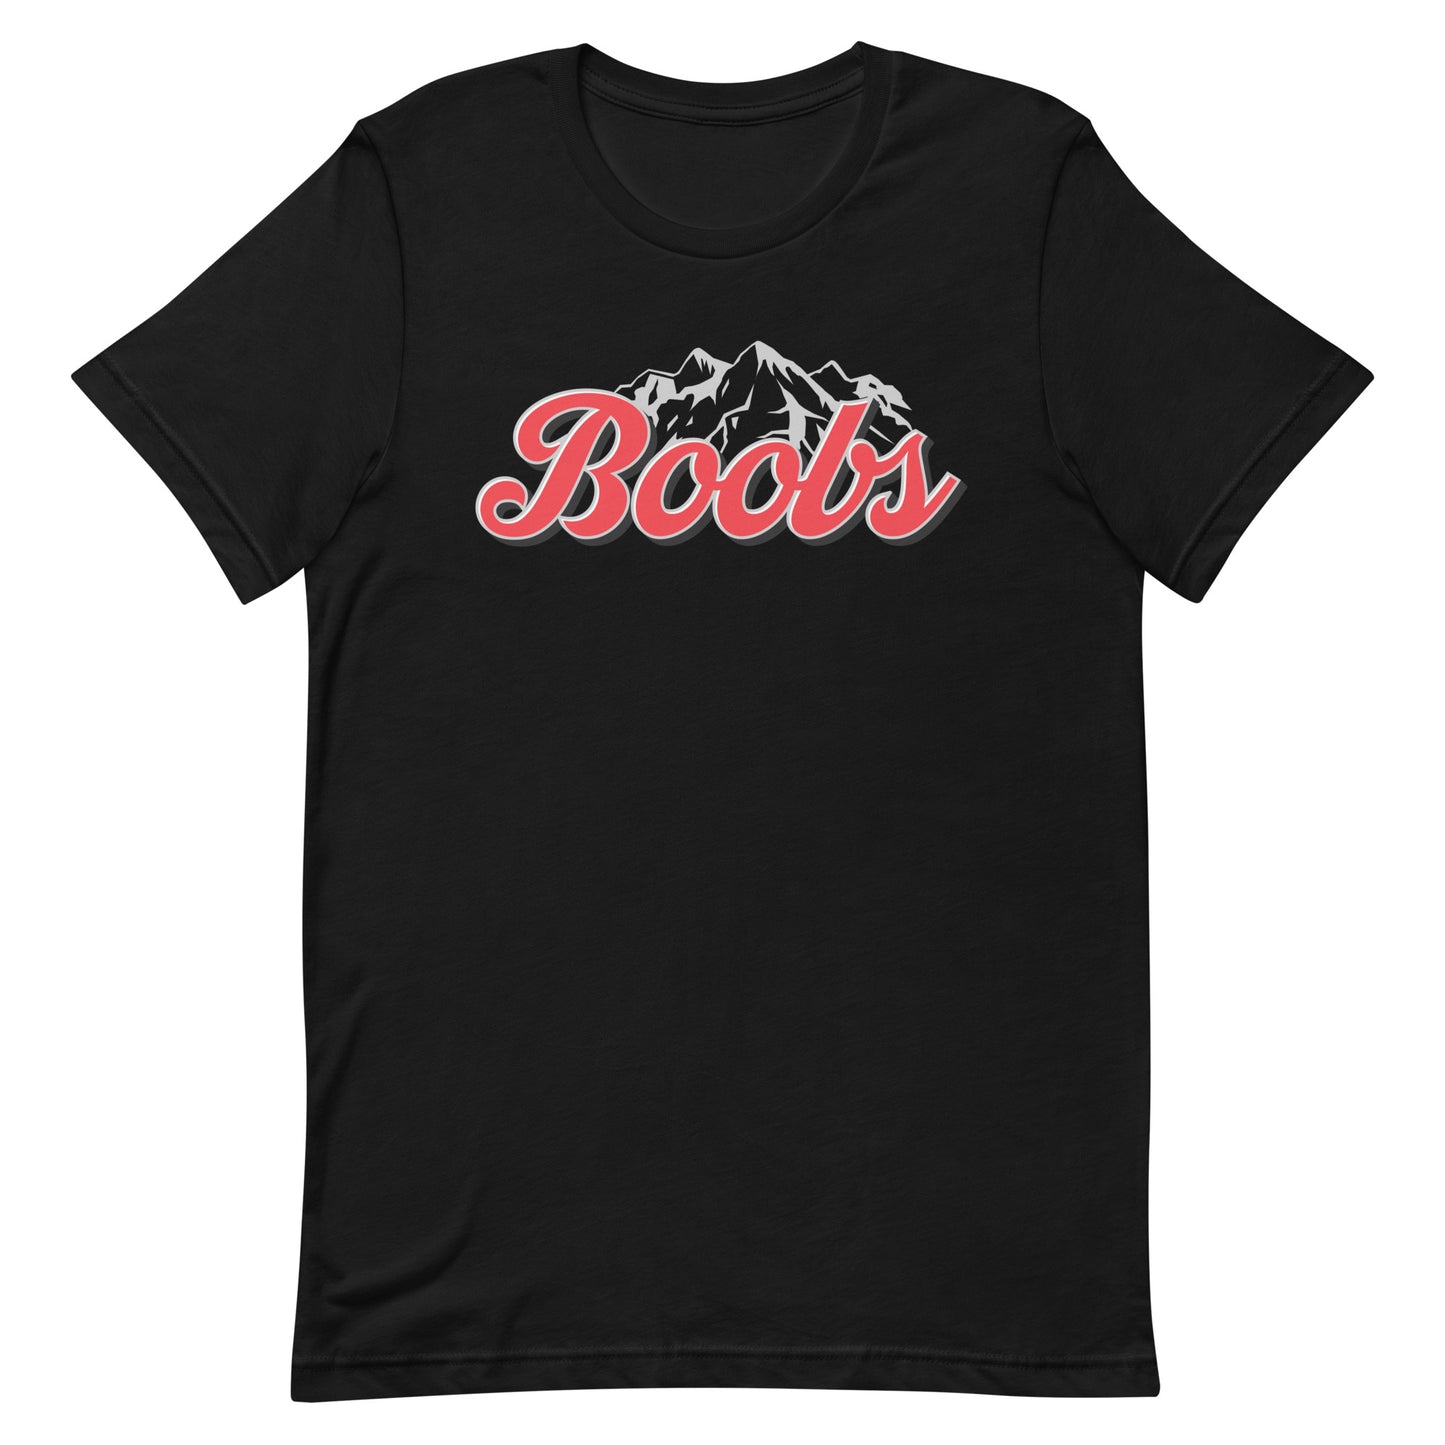 Boobs (Coors) Unisex t-shirt